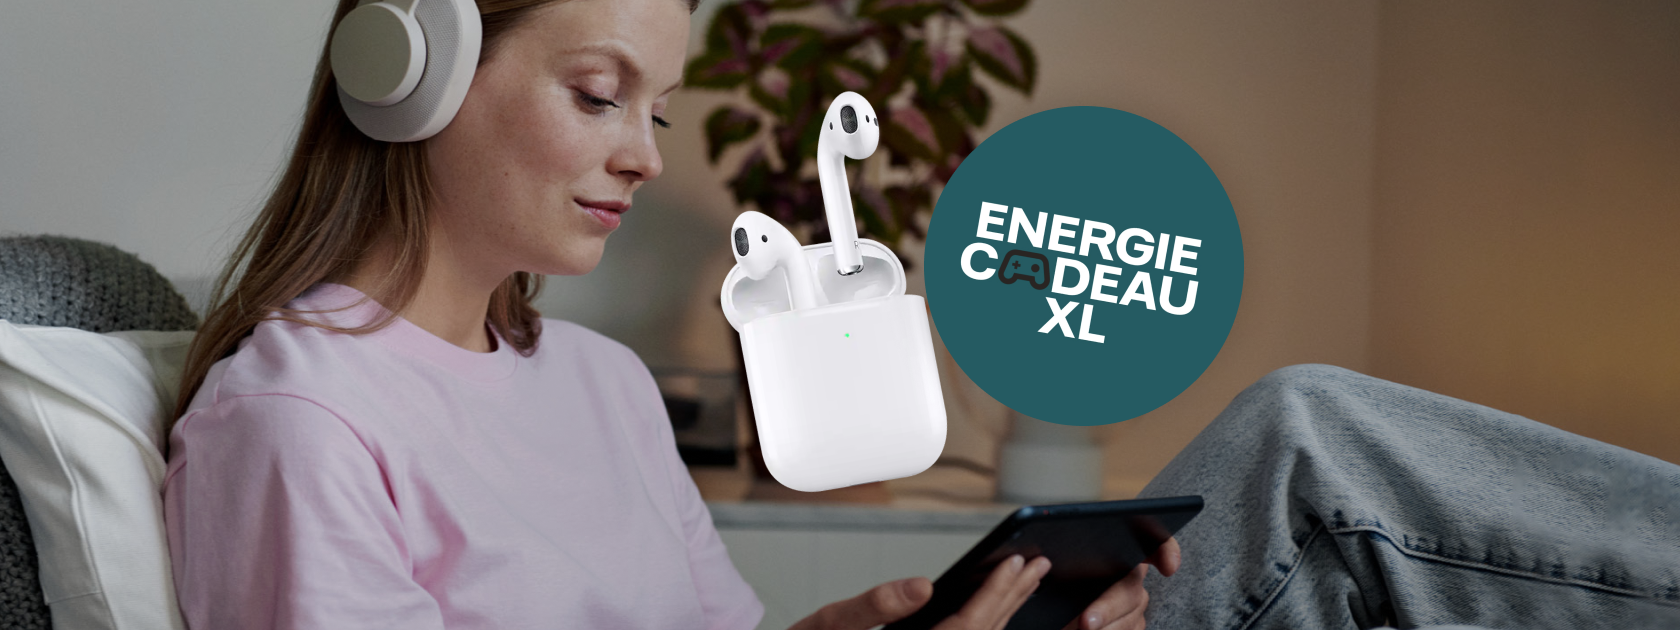 Nuon energie aanbieding: Gratis Apple Airpods t.w.v. € 229,-